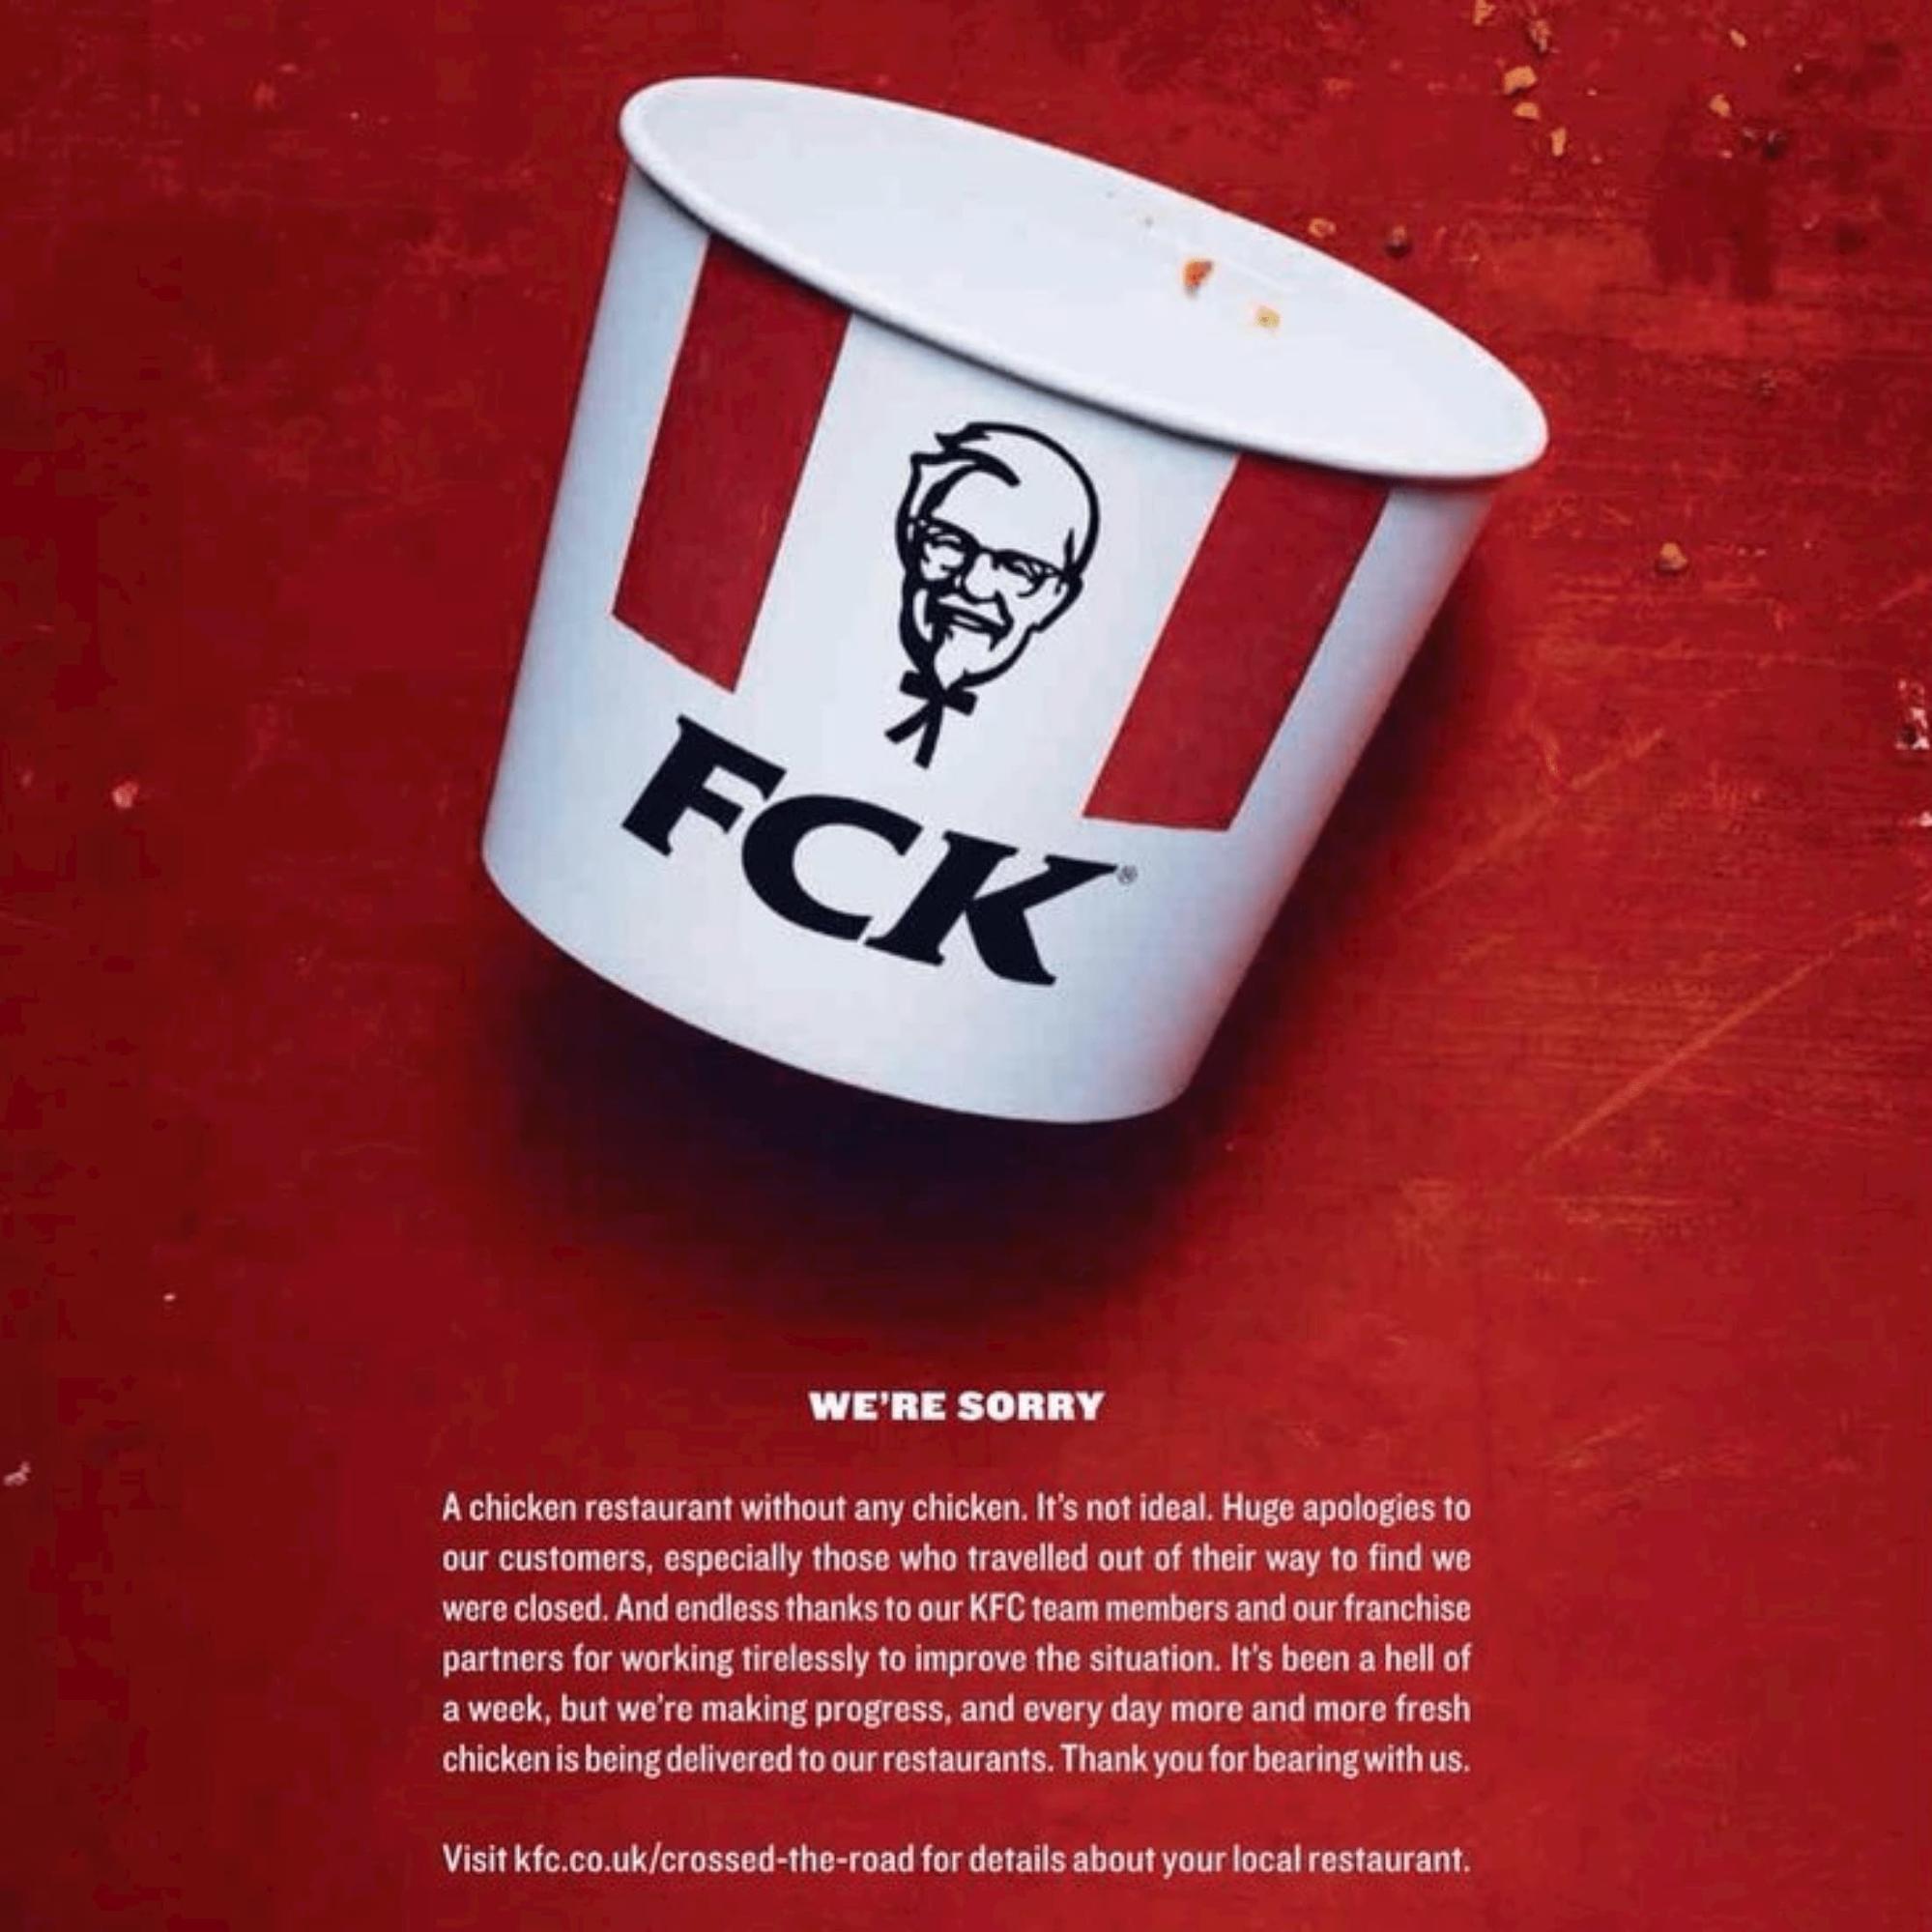 Качественную работу на упреждение негатива показала команда KFC